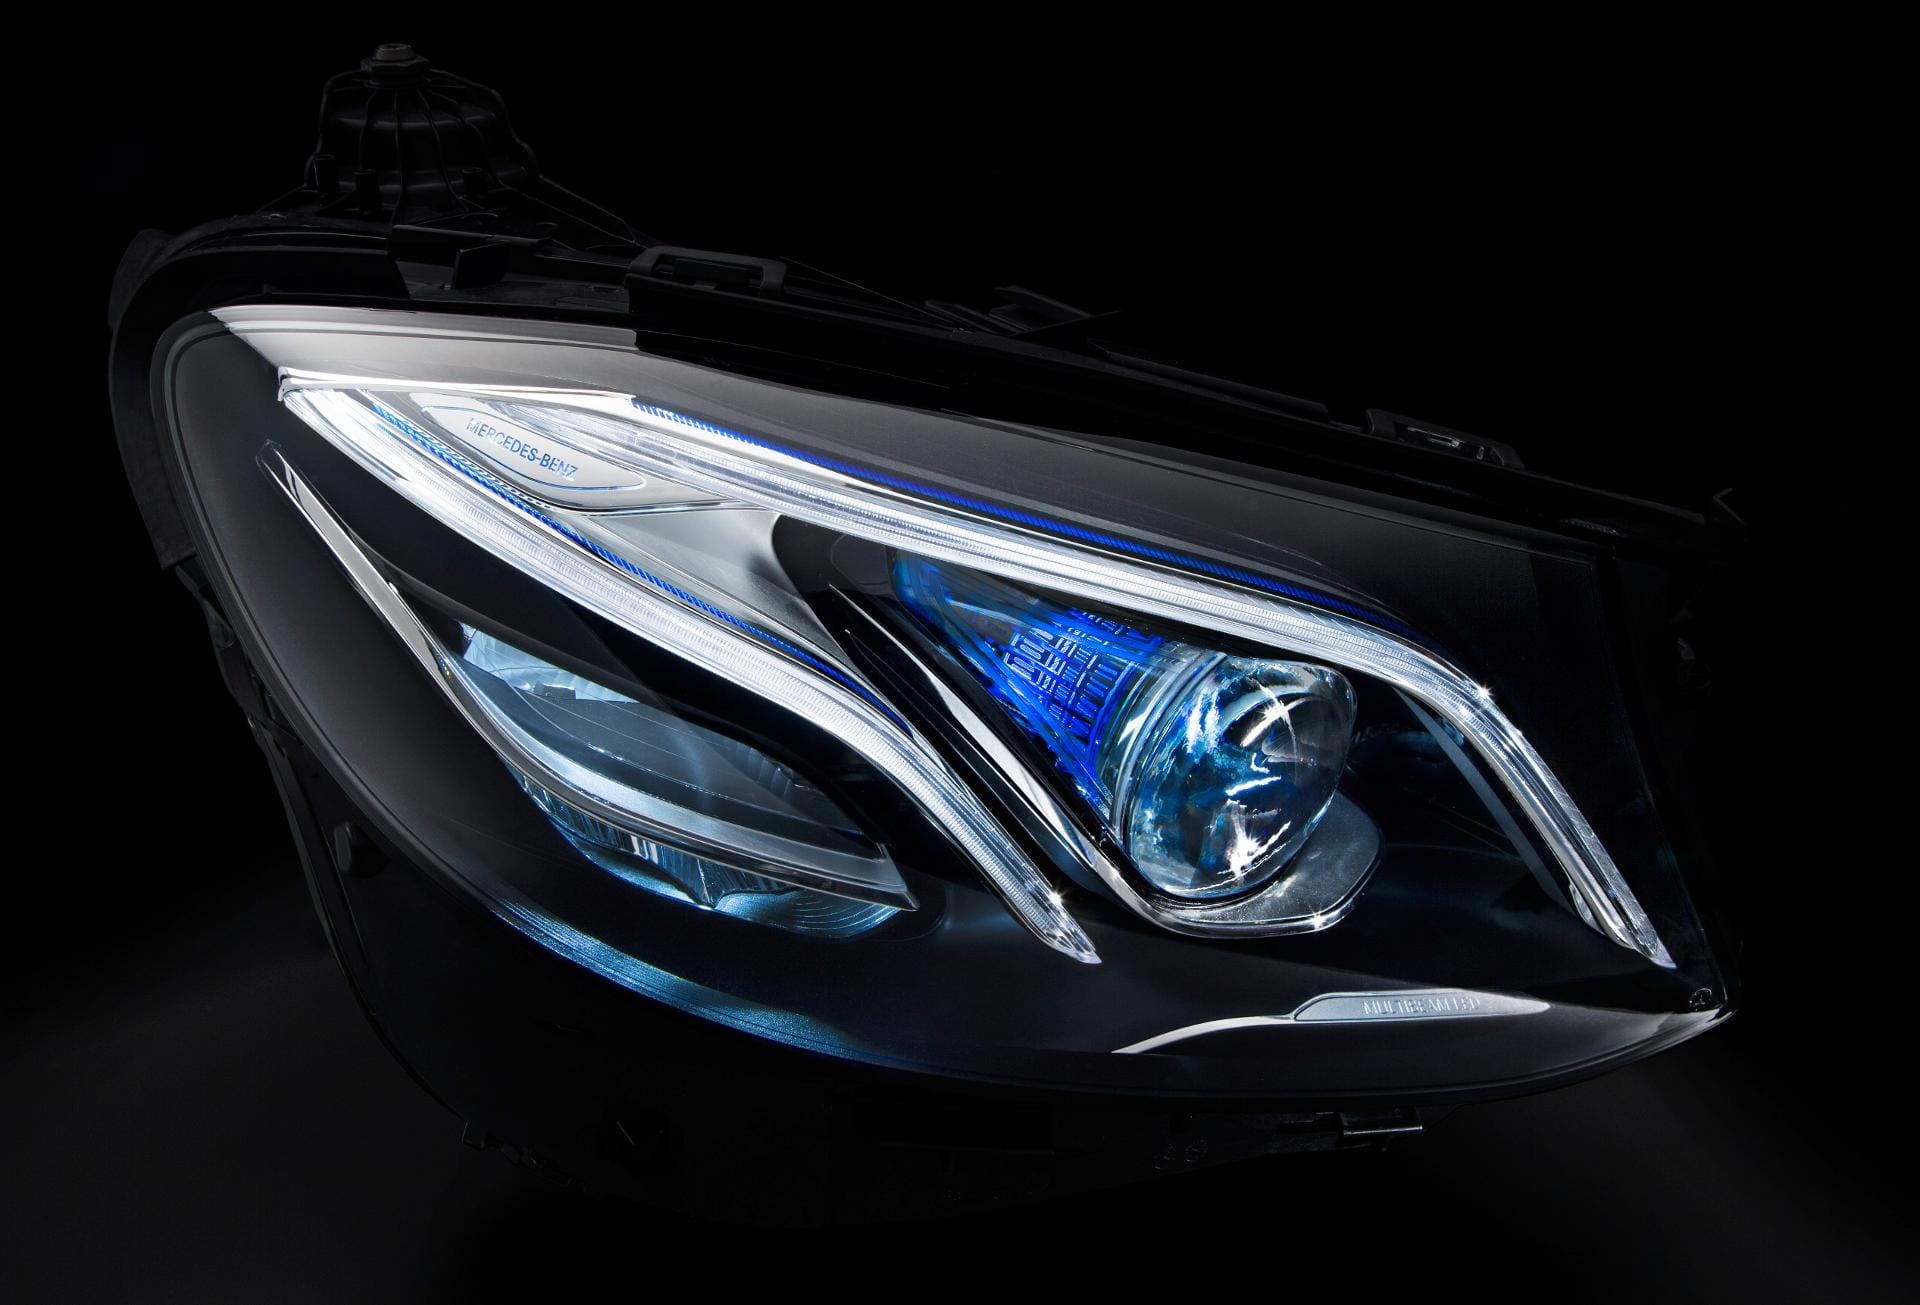 Mercedes hat auch schon Details der neuen E-Klasse veröffentlicht. Hier ein neuer LED-Multibeam-Scheinwerfer.